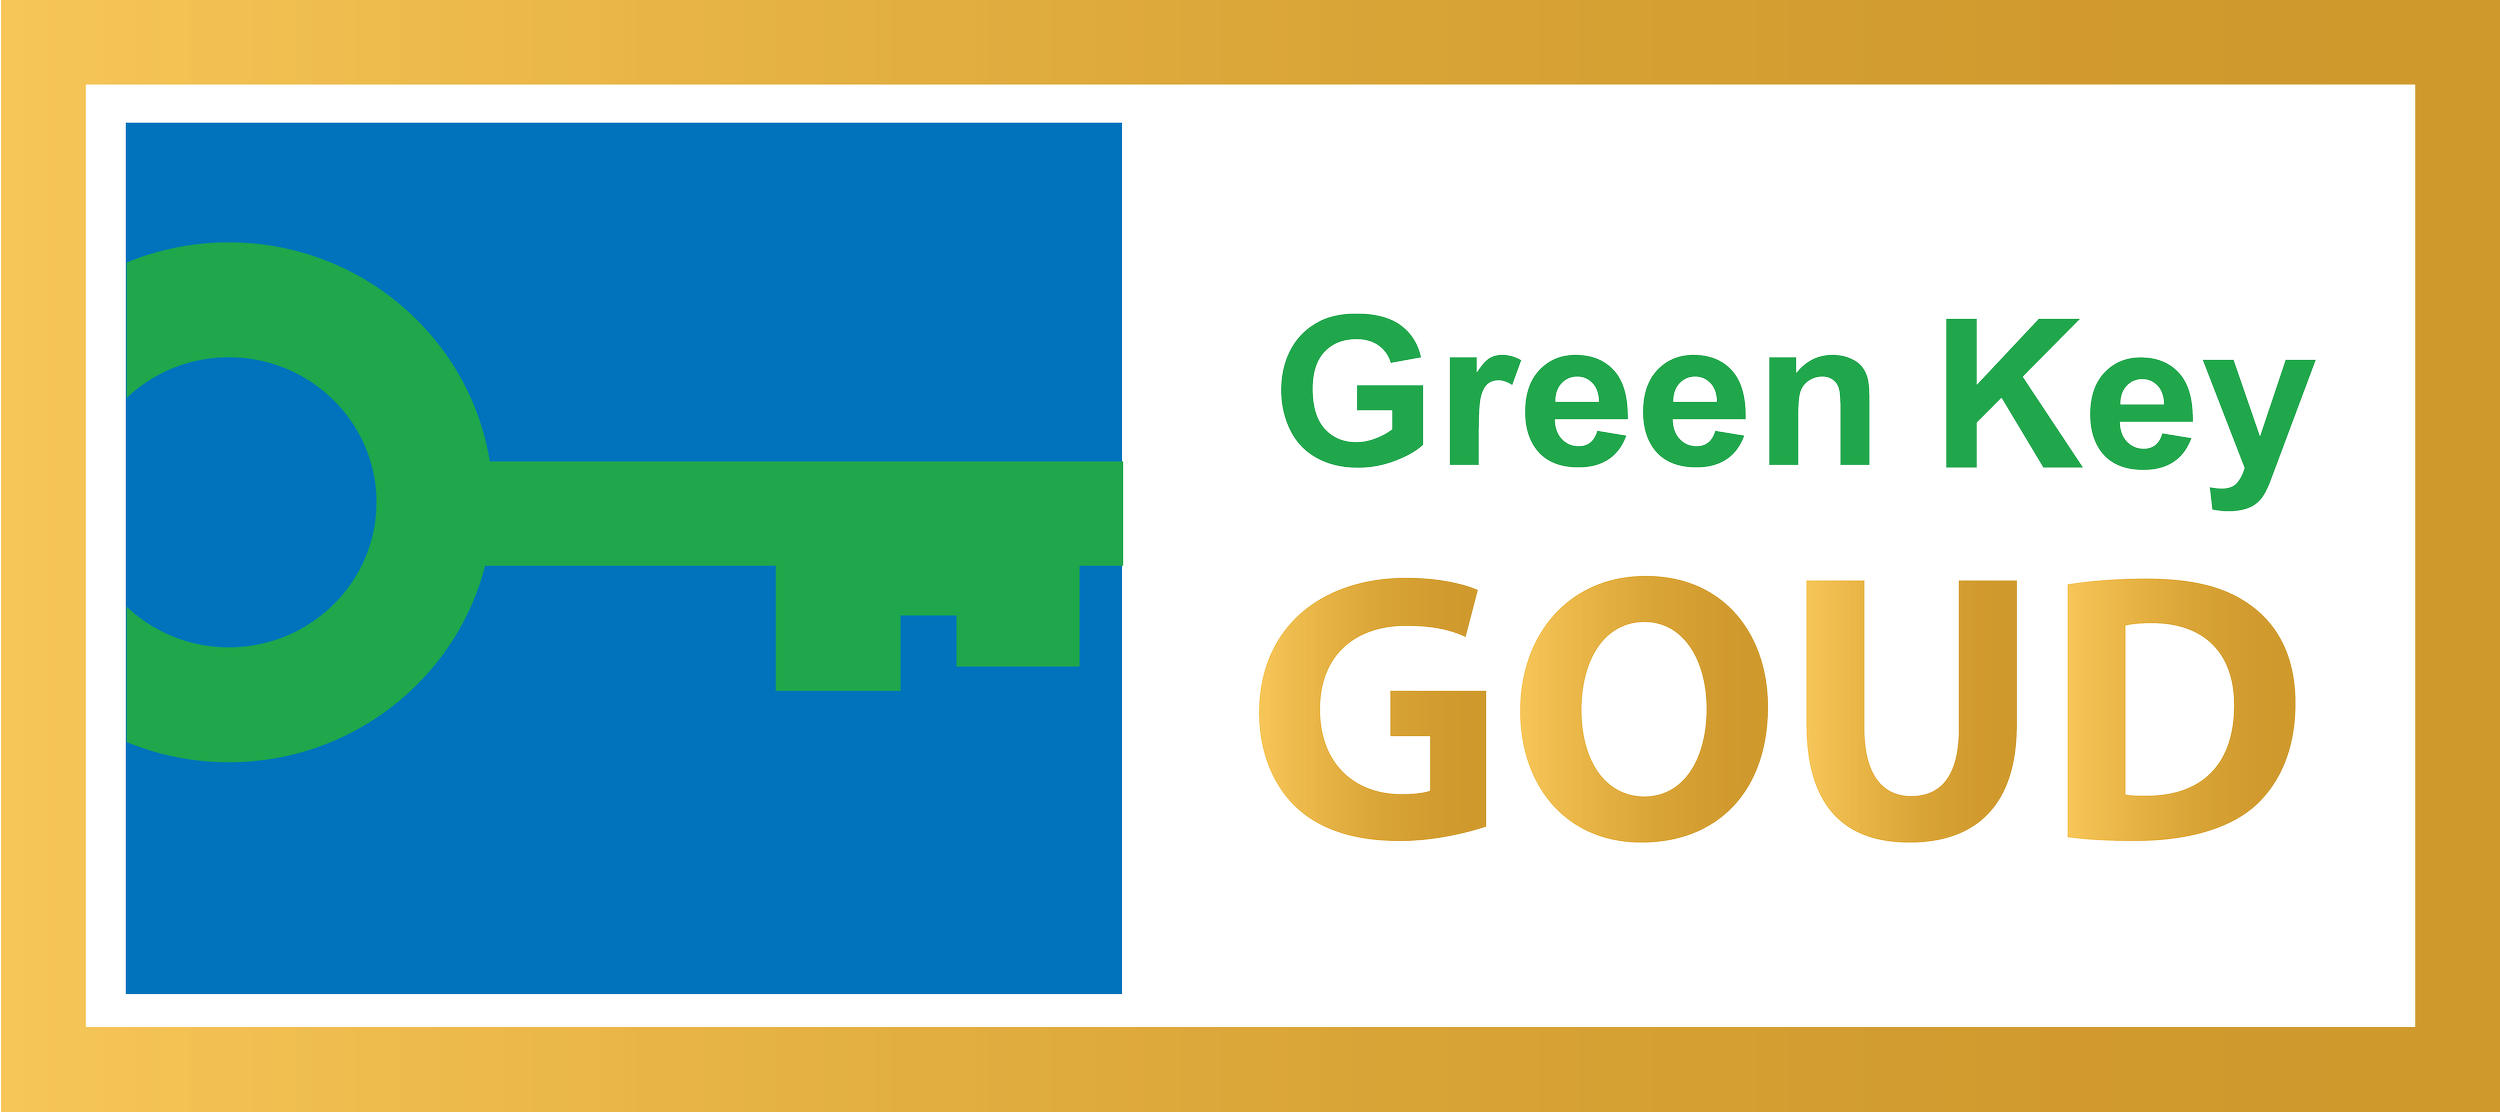 Sinds 2018 hebben wij het Green Key Goud certificaat